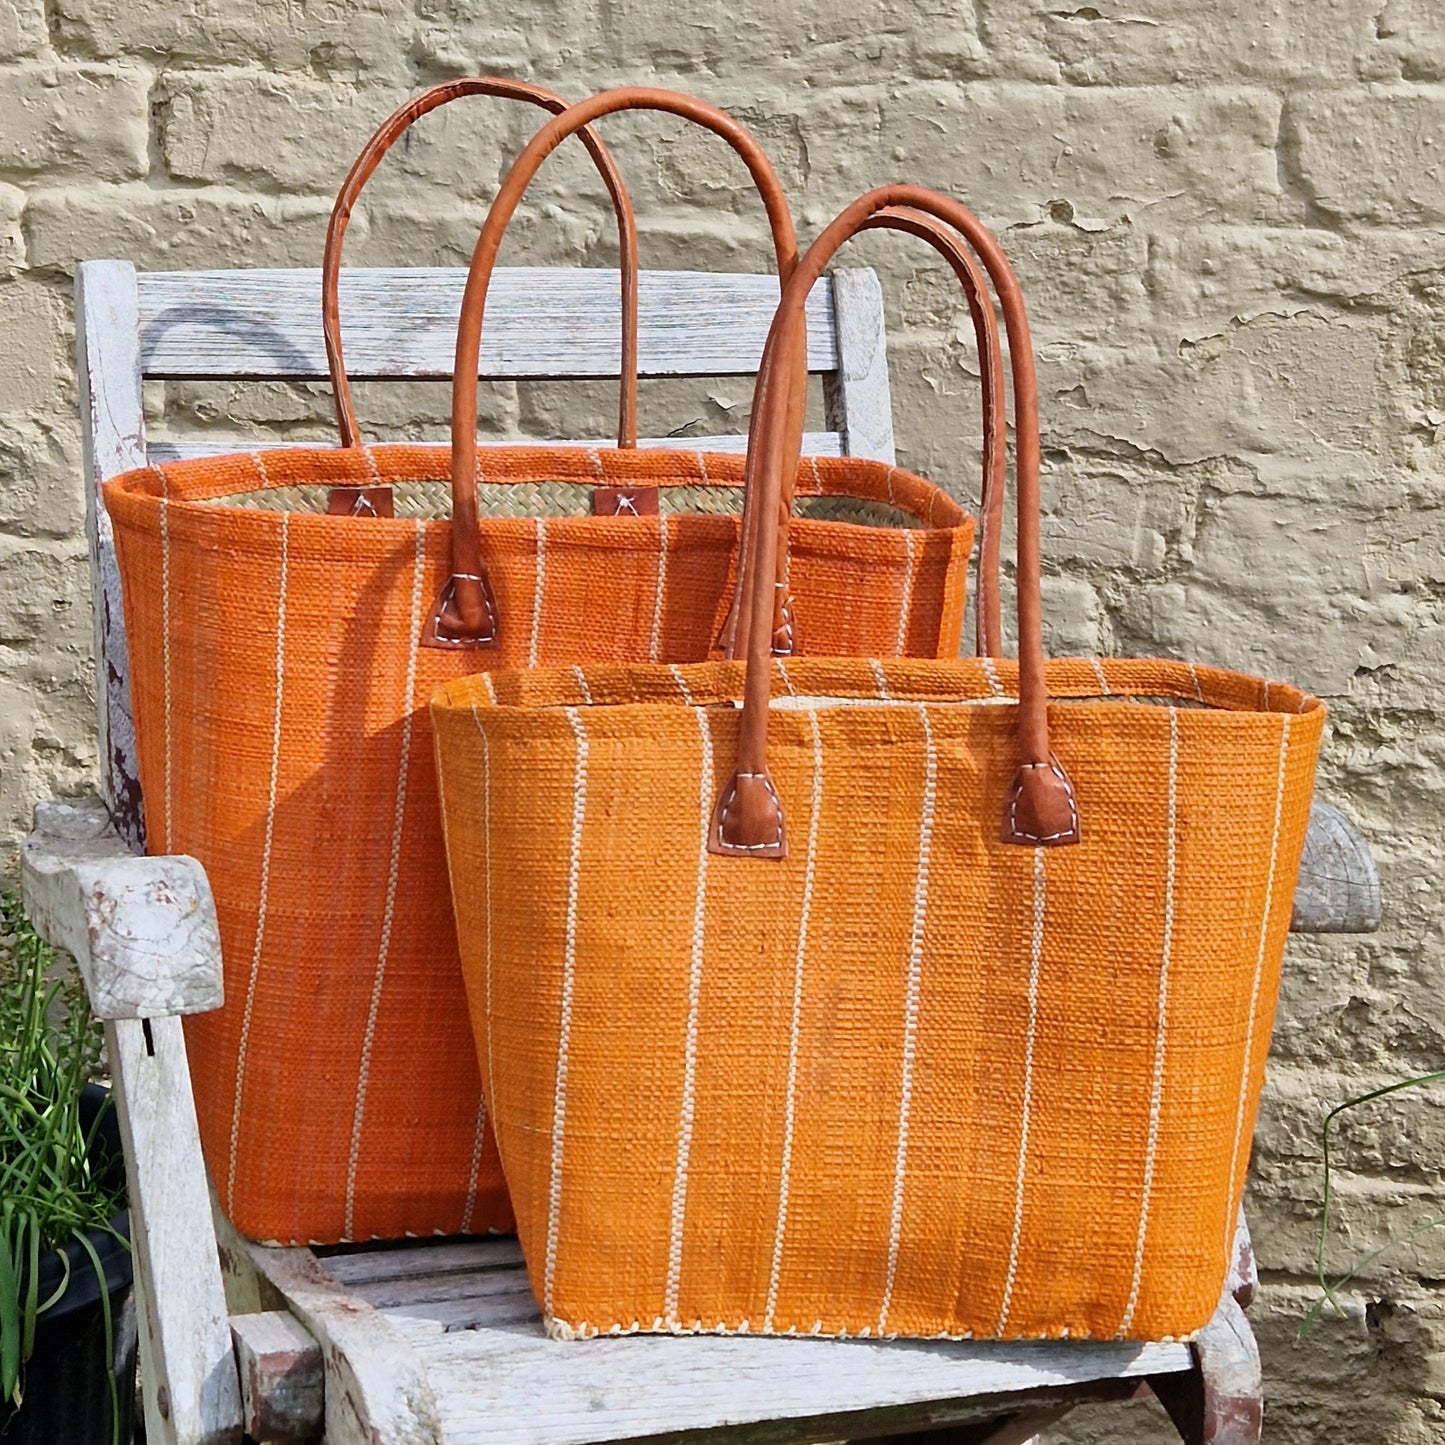 Bright Orange Raffia Basket with vertical pinstripe pattern.